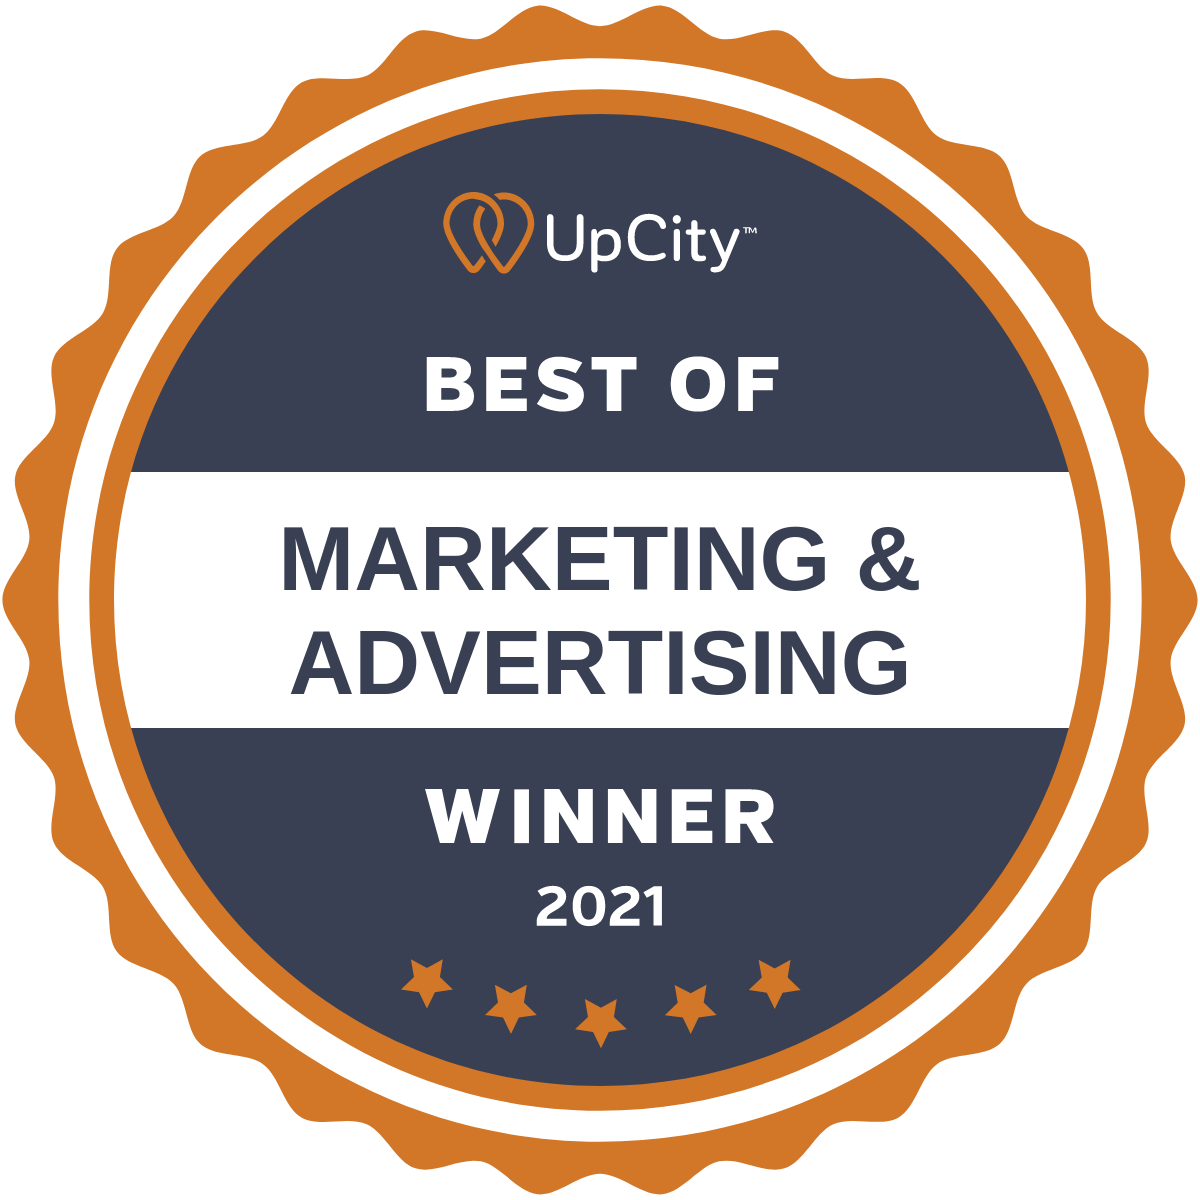 Best of Marketing & Advertising Winner